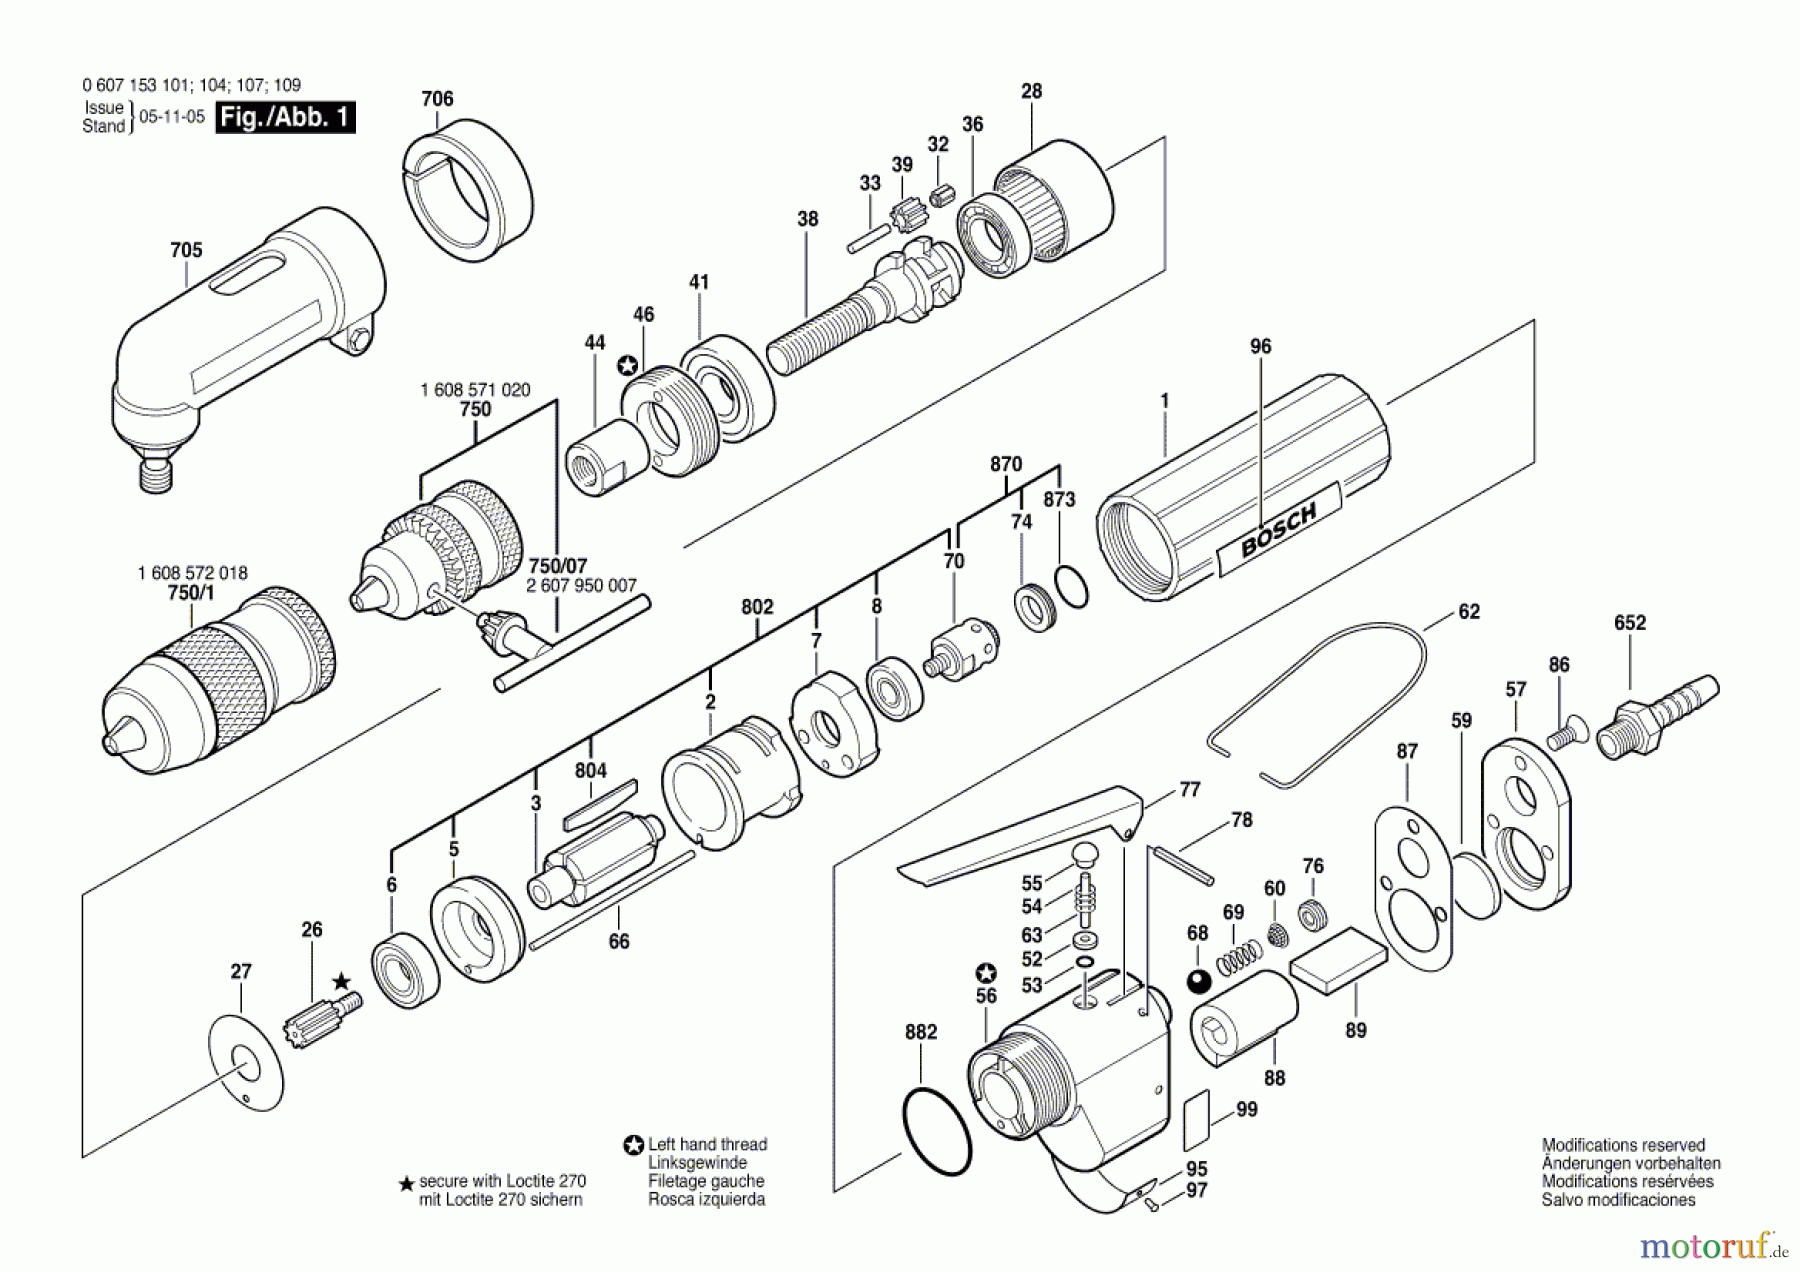  Bosch Werkzeug Bohrmaschine 180 WATT-SERIE Seite 1